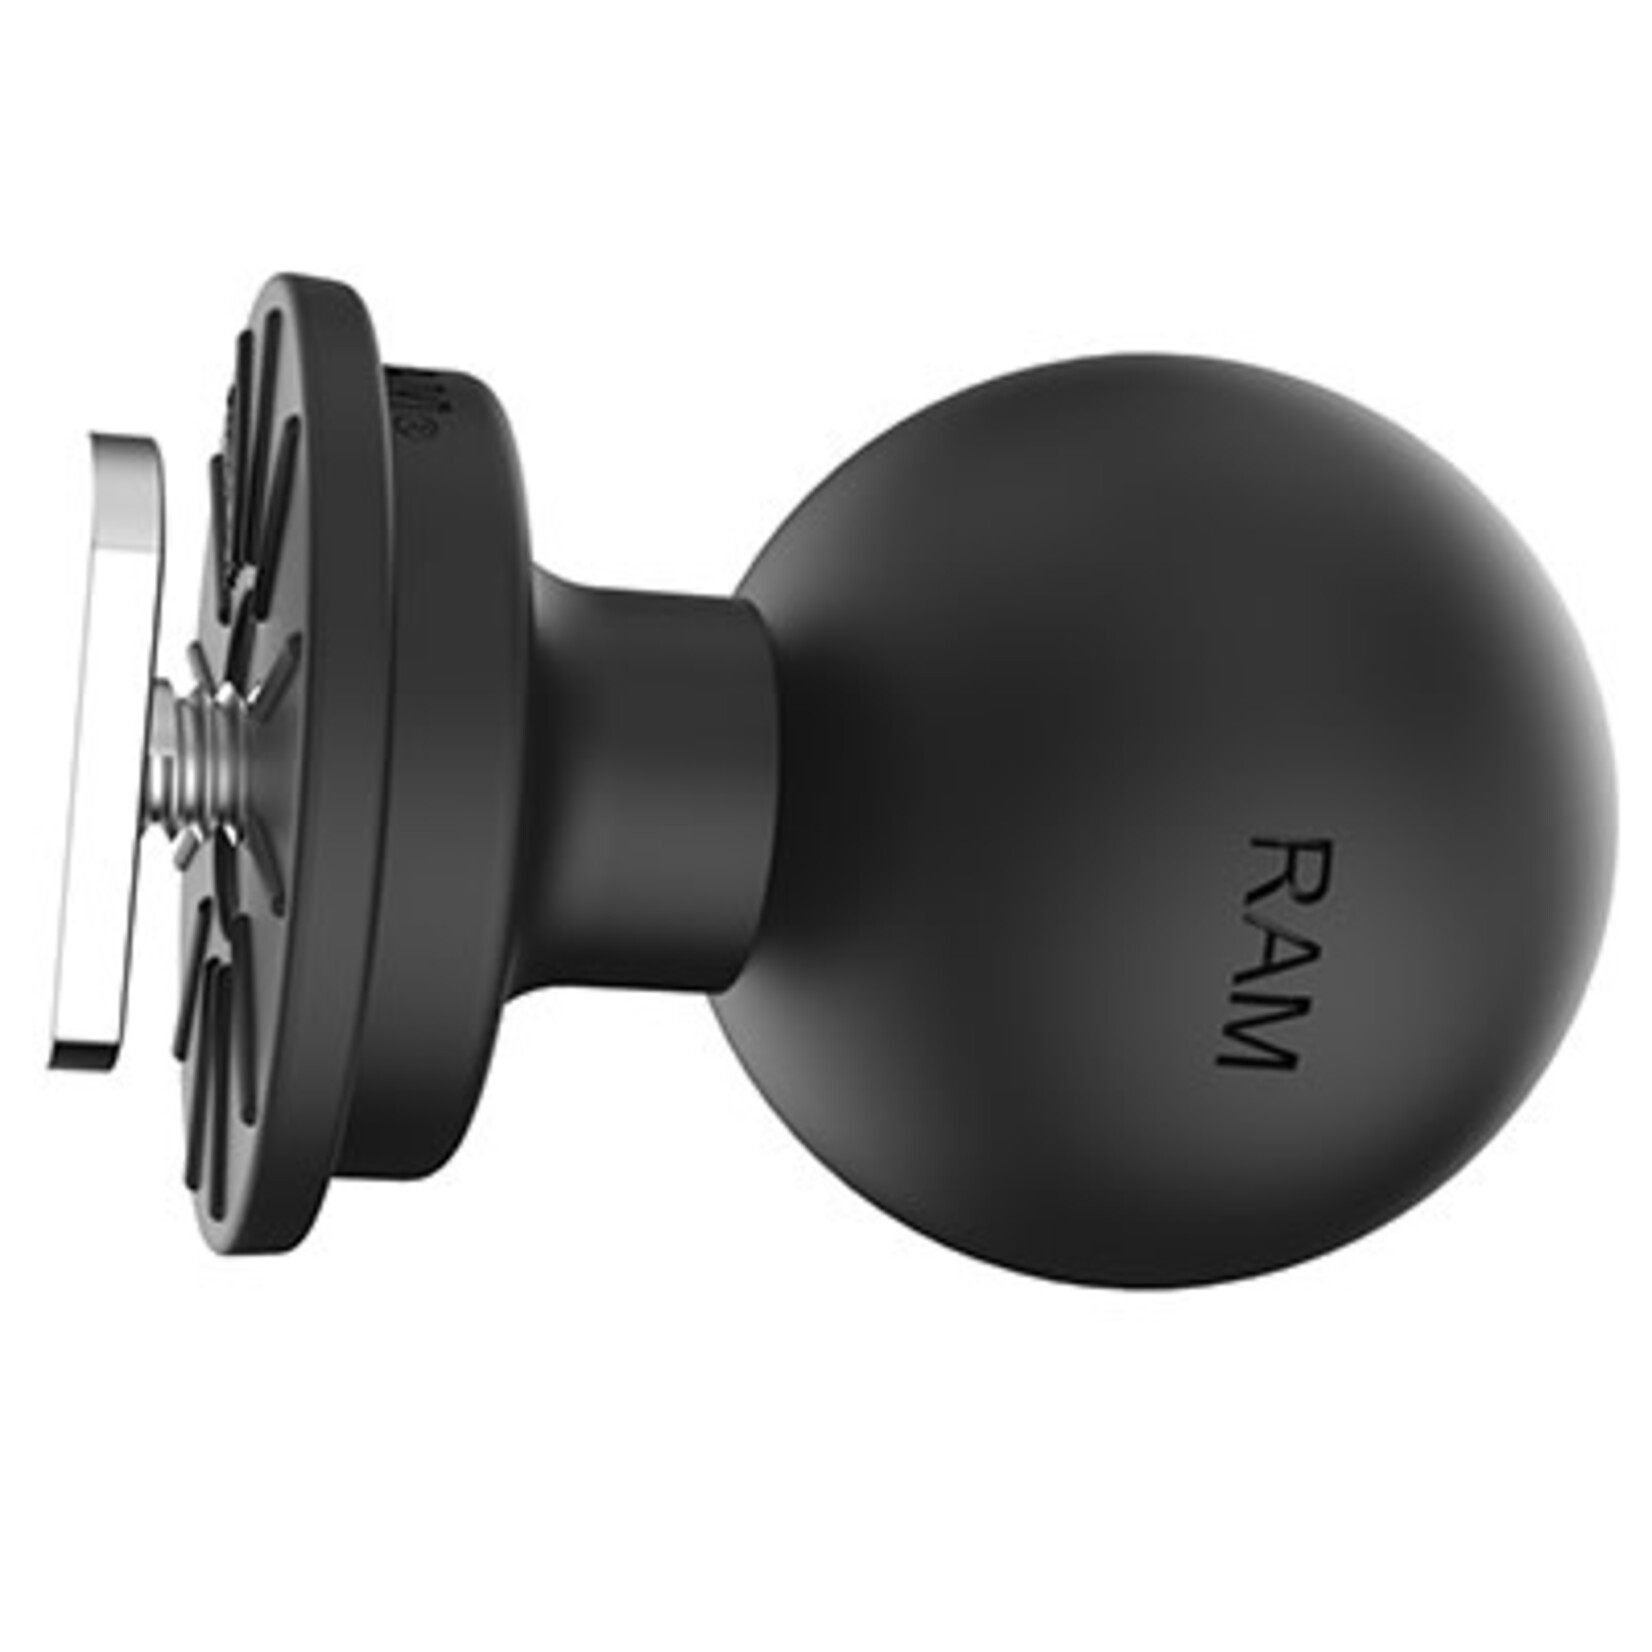 Boule pour accessoires de pêche RAM Track Ball 1.5" taille C